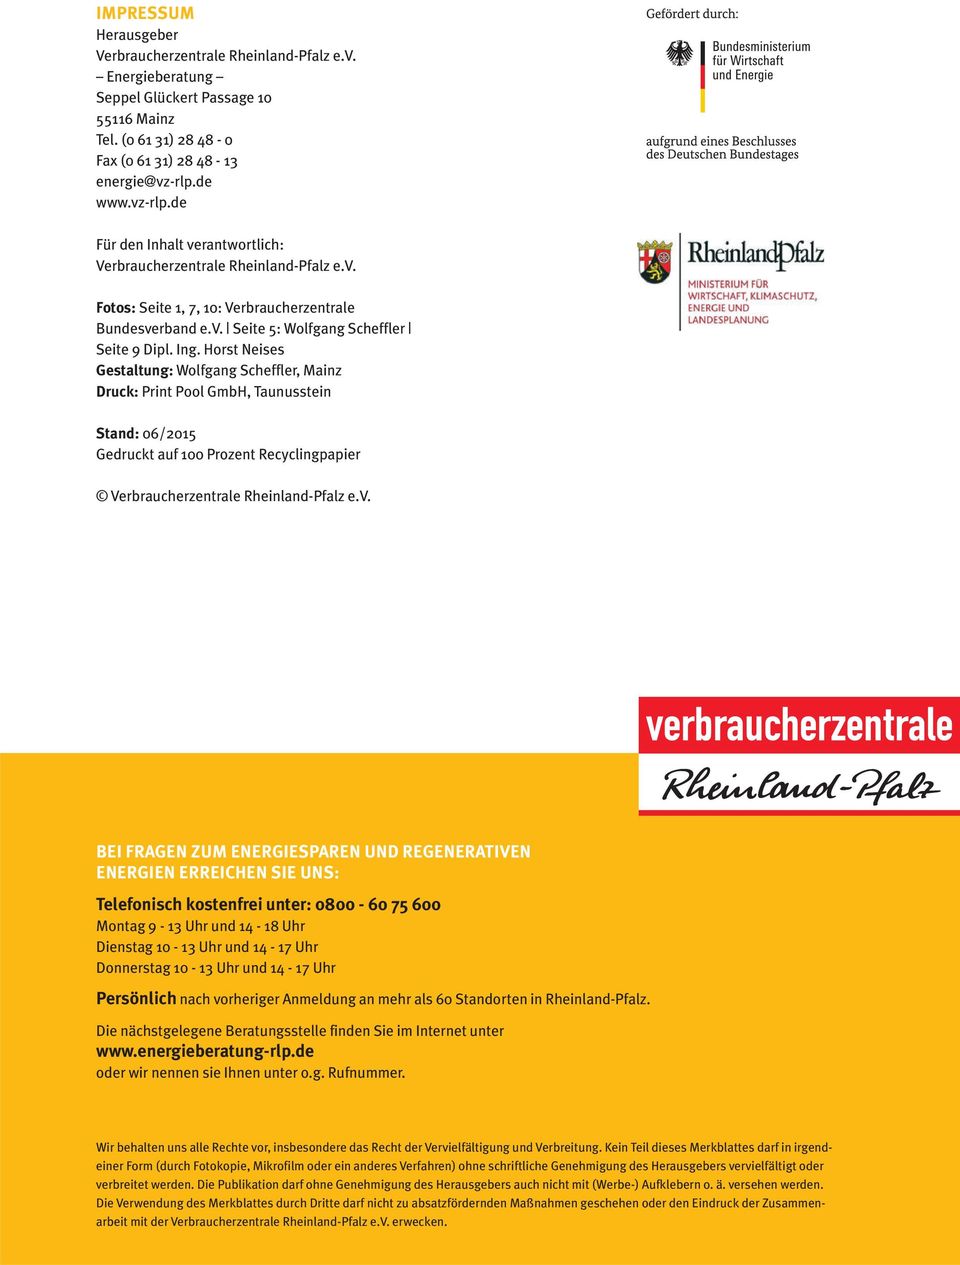 Horst Neises Gestaltung: Wolfgang Scheffler, Mainz Druck: Print Pool GmbH, Taunusstein Stand: 06/2015 Gedruckt auf 100 Prozent Recyclingpapier Verbraucherzentrale Rheinland-Pfalz e.v.